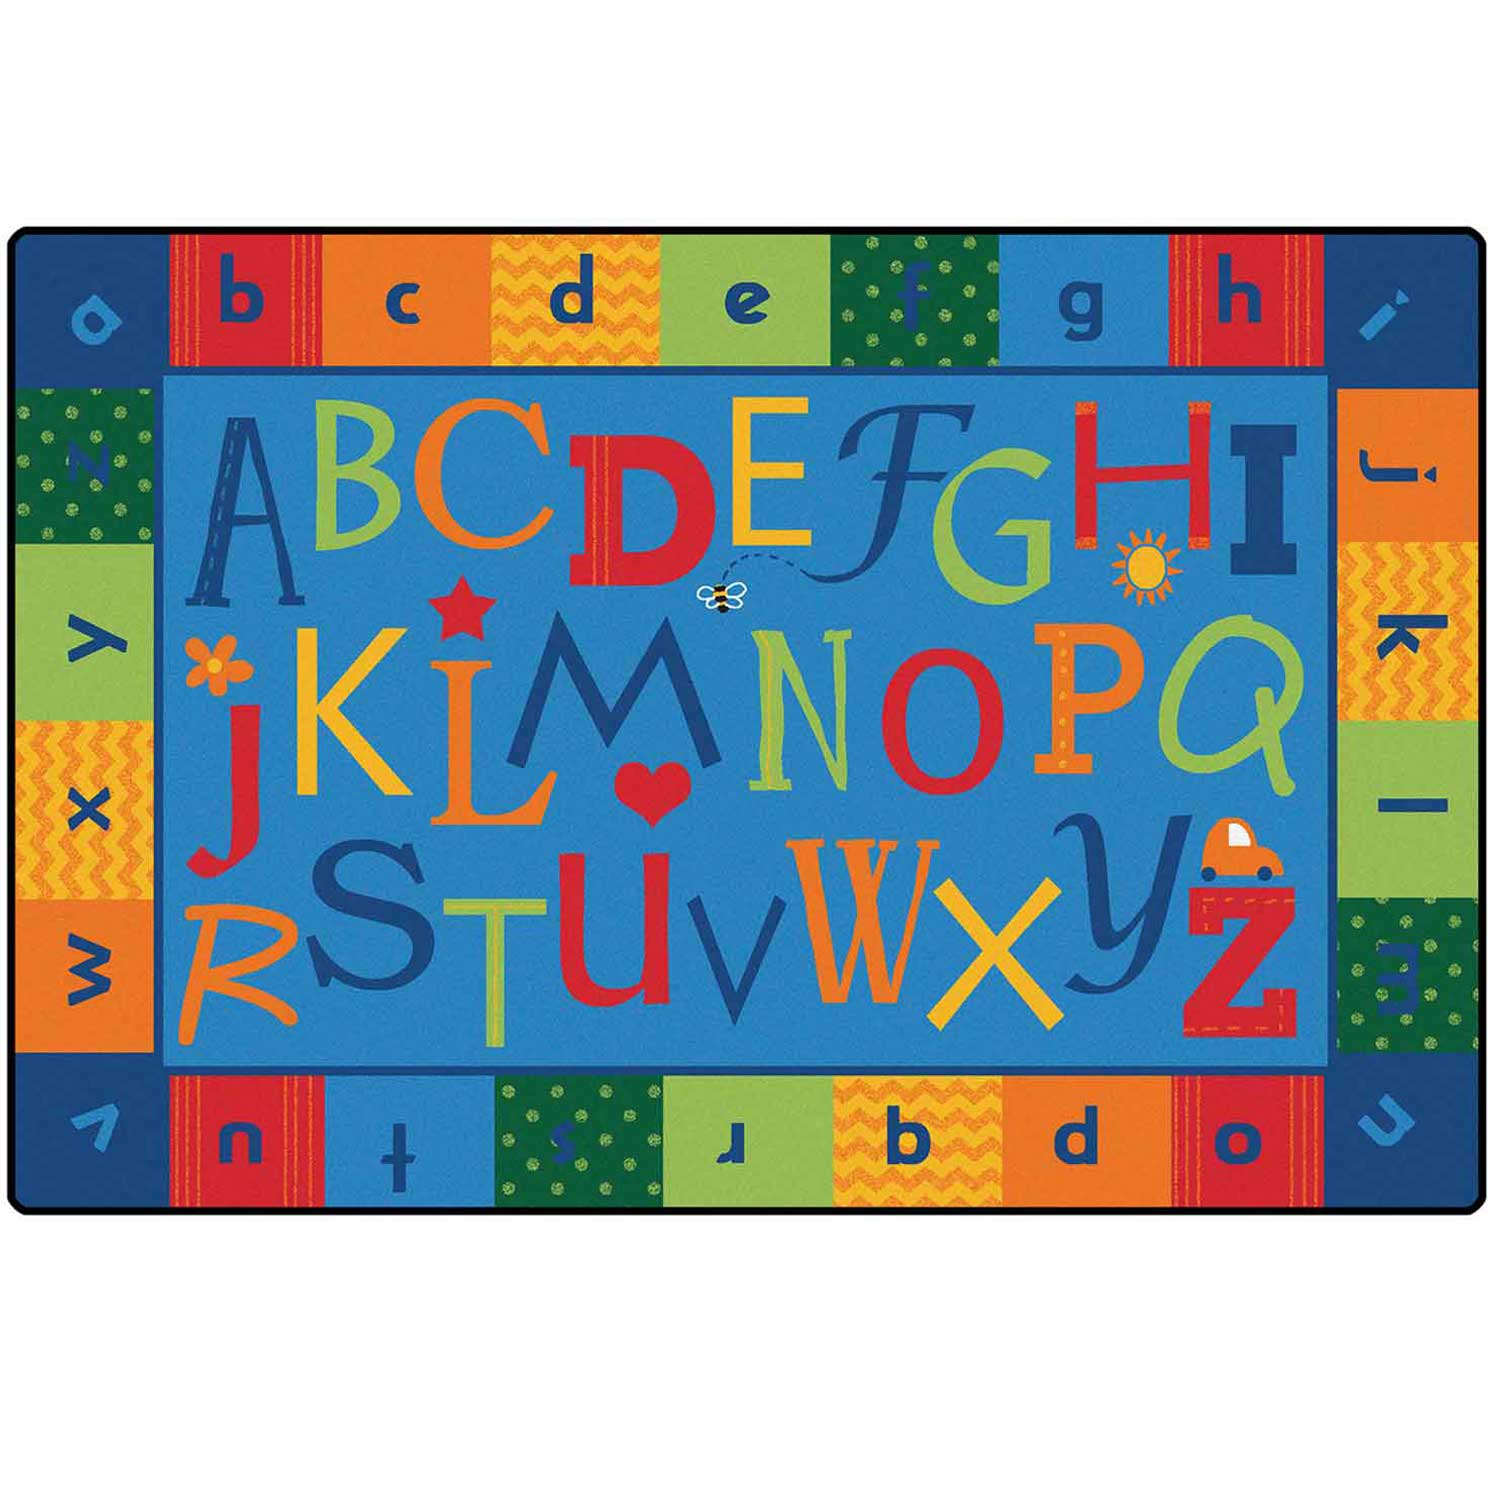 KIDSoft™ Alphabet Around Literacy Rug